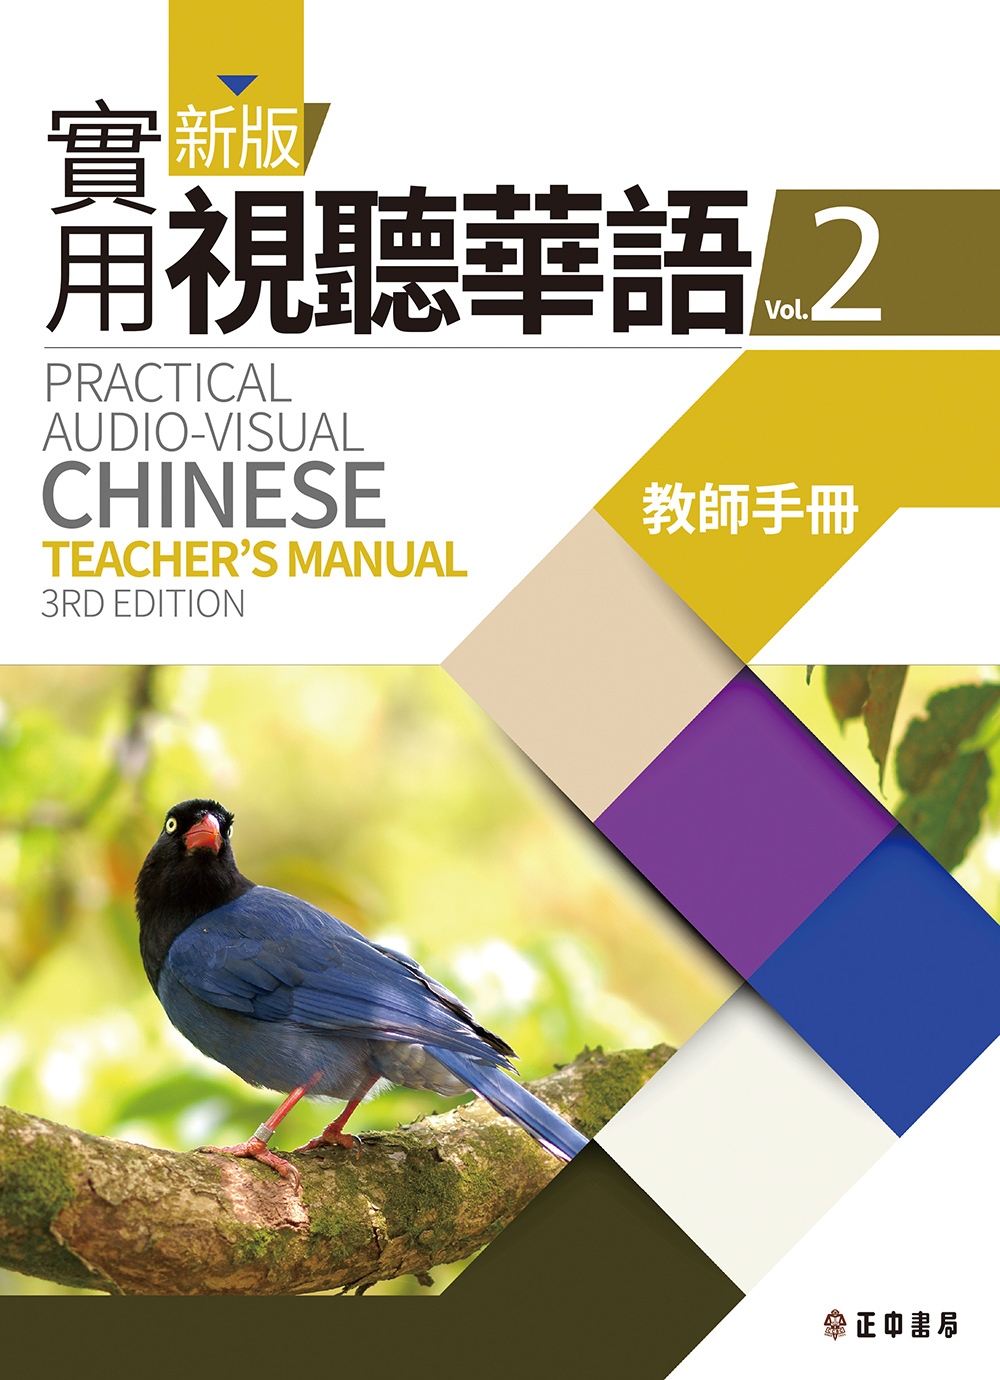 新版實用視聽華語2 教師手冊 (第三版)